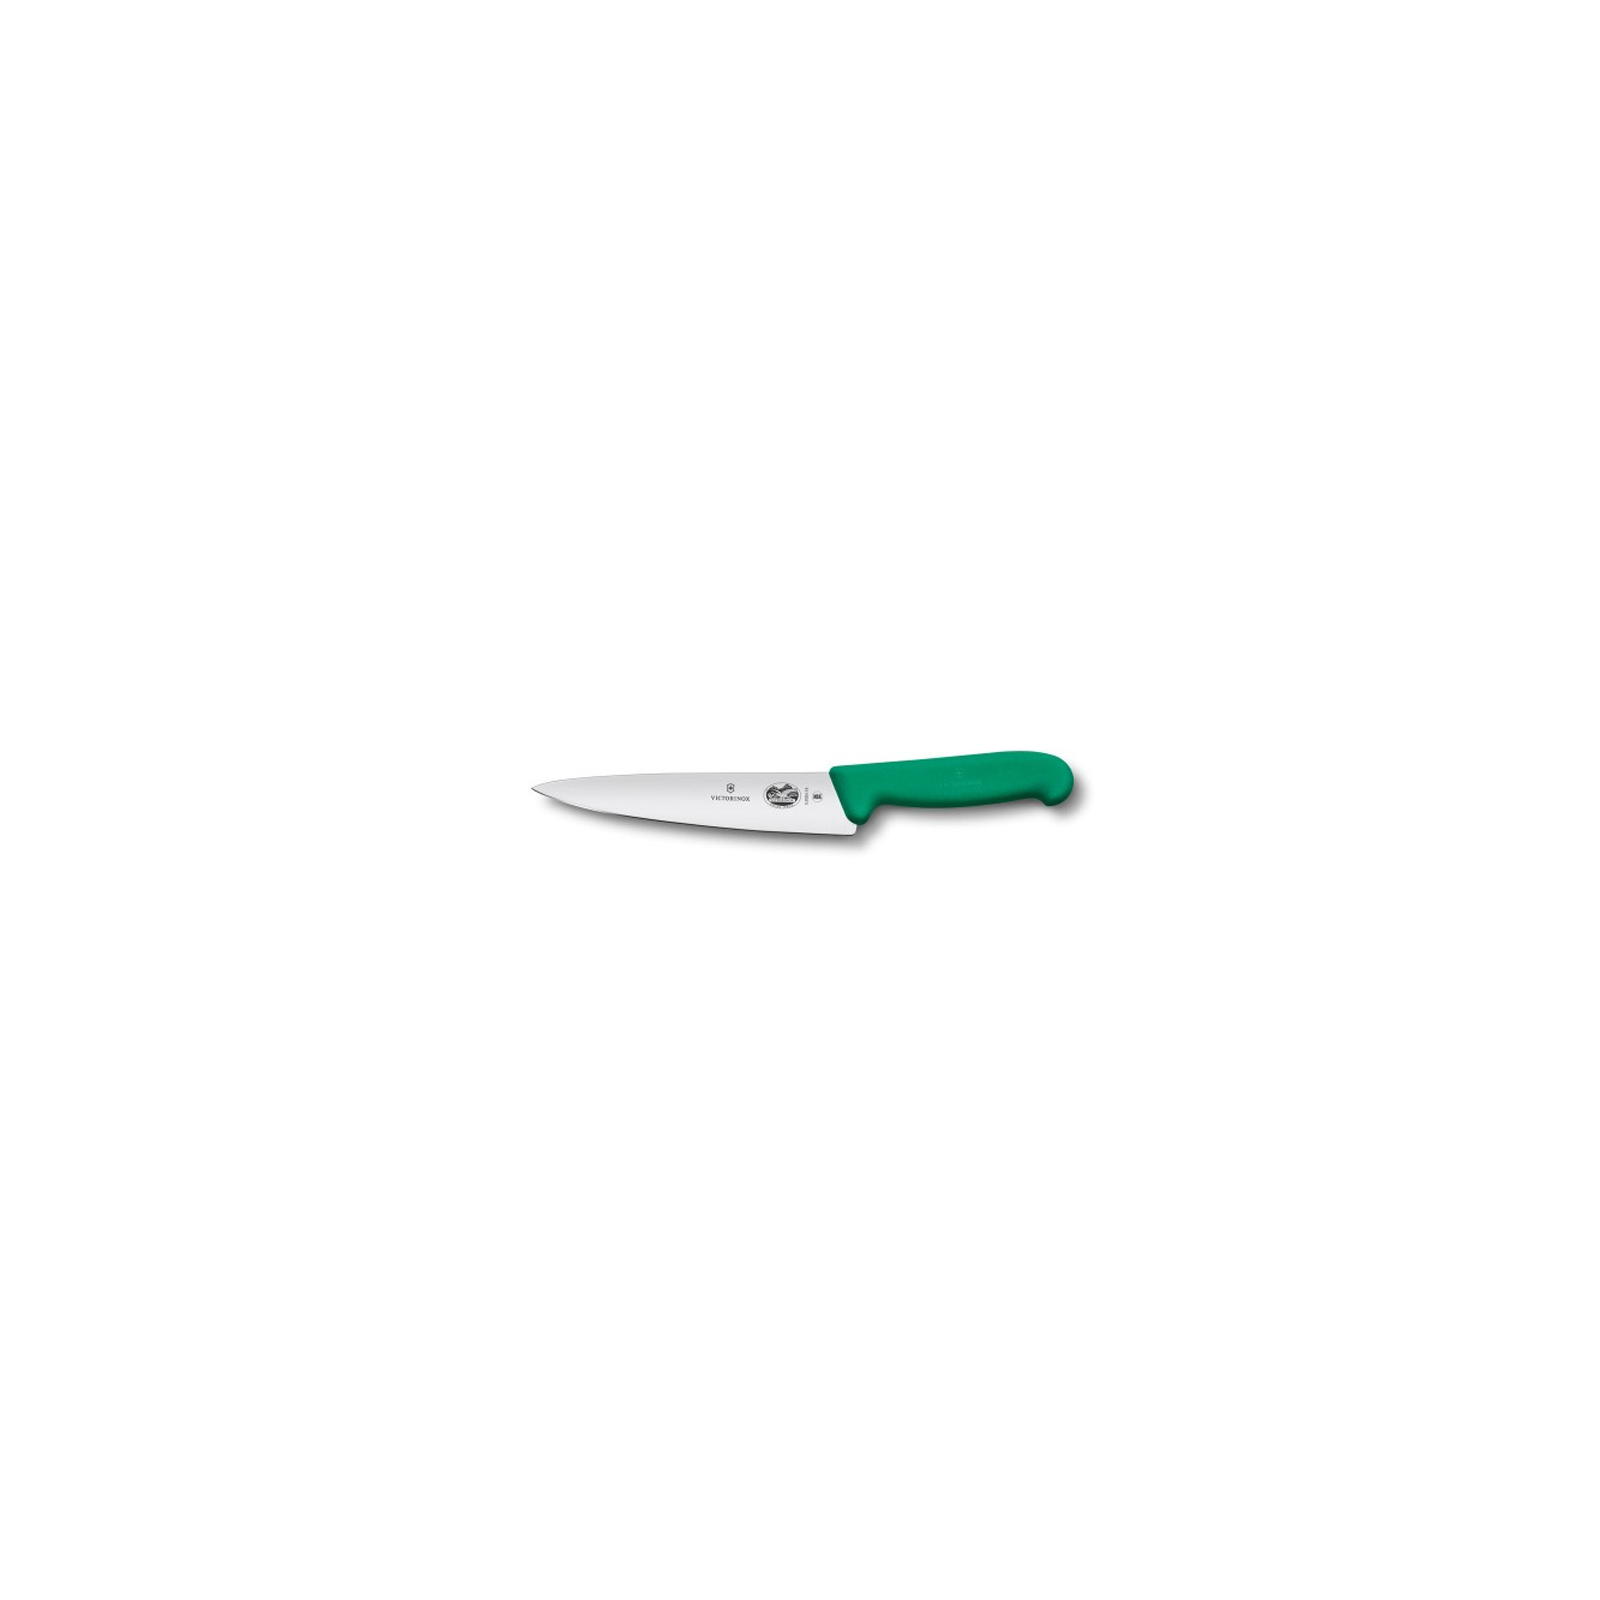 Кухонный нож Victorinox Fibrox разделочный 19 см, зеленый (5.2004.19)